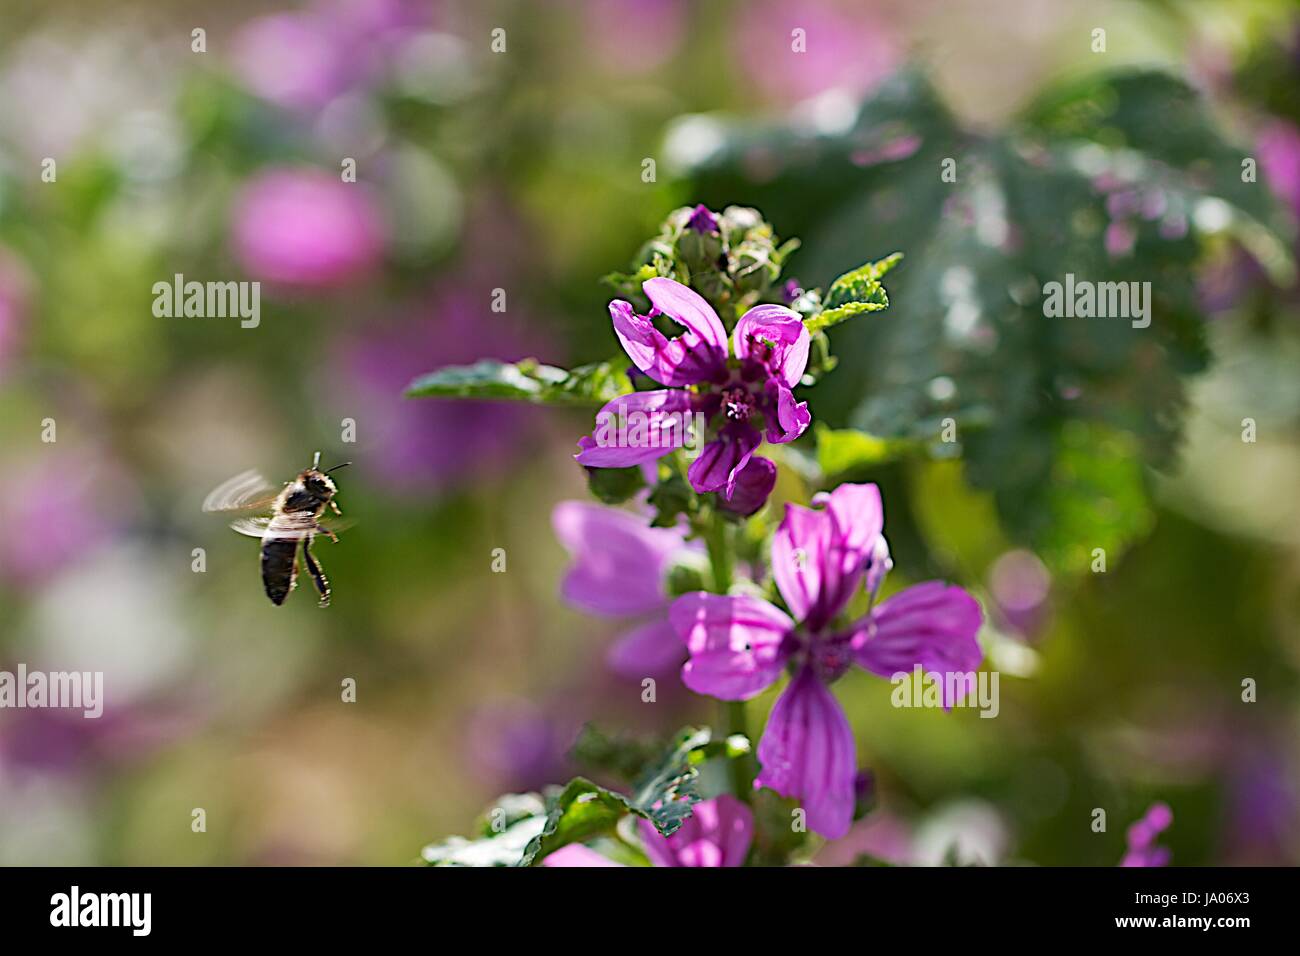 Bee raccogliendo nel passare il puntatore del mouse Foto Stock